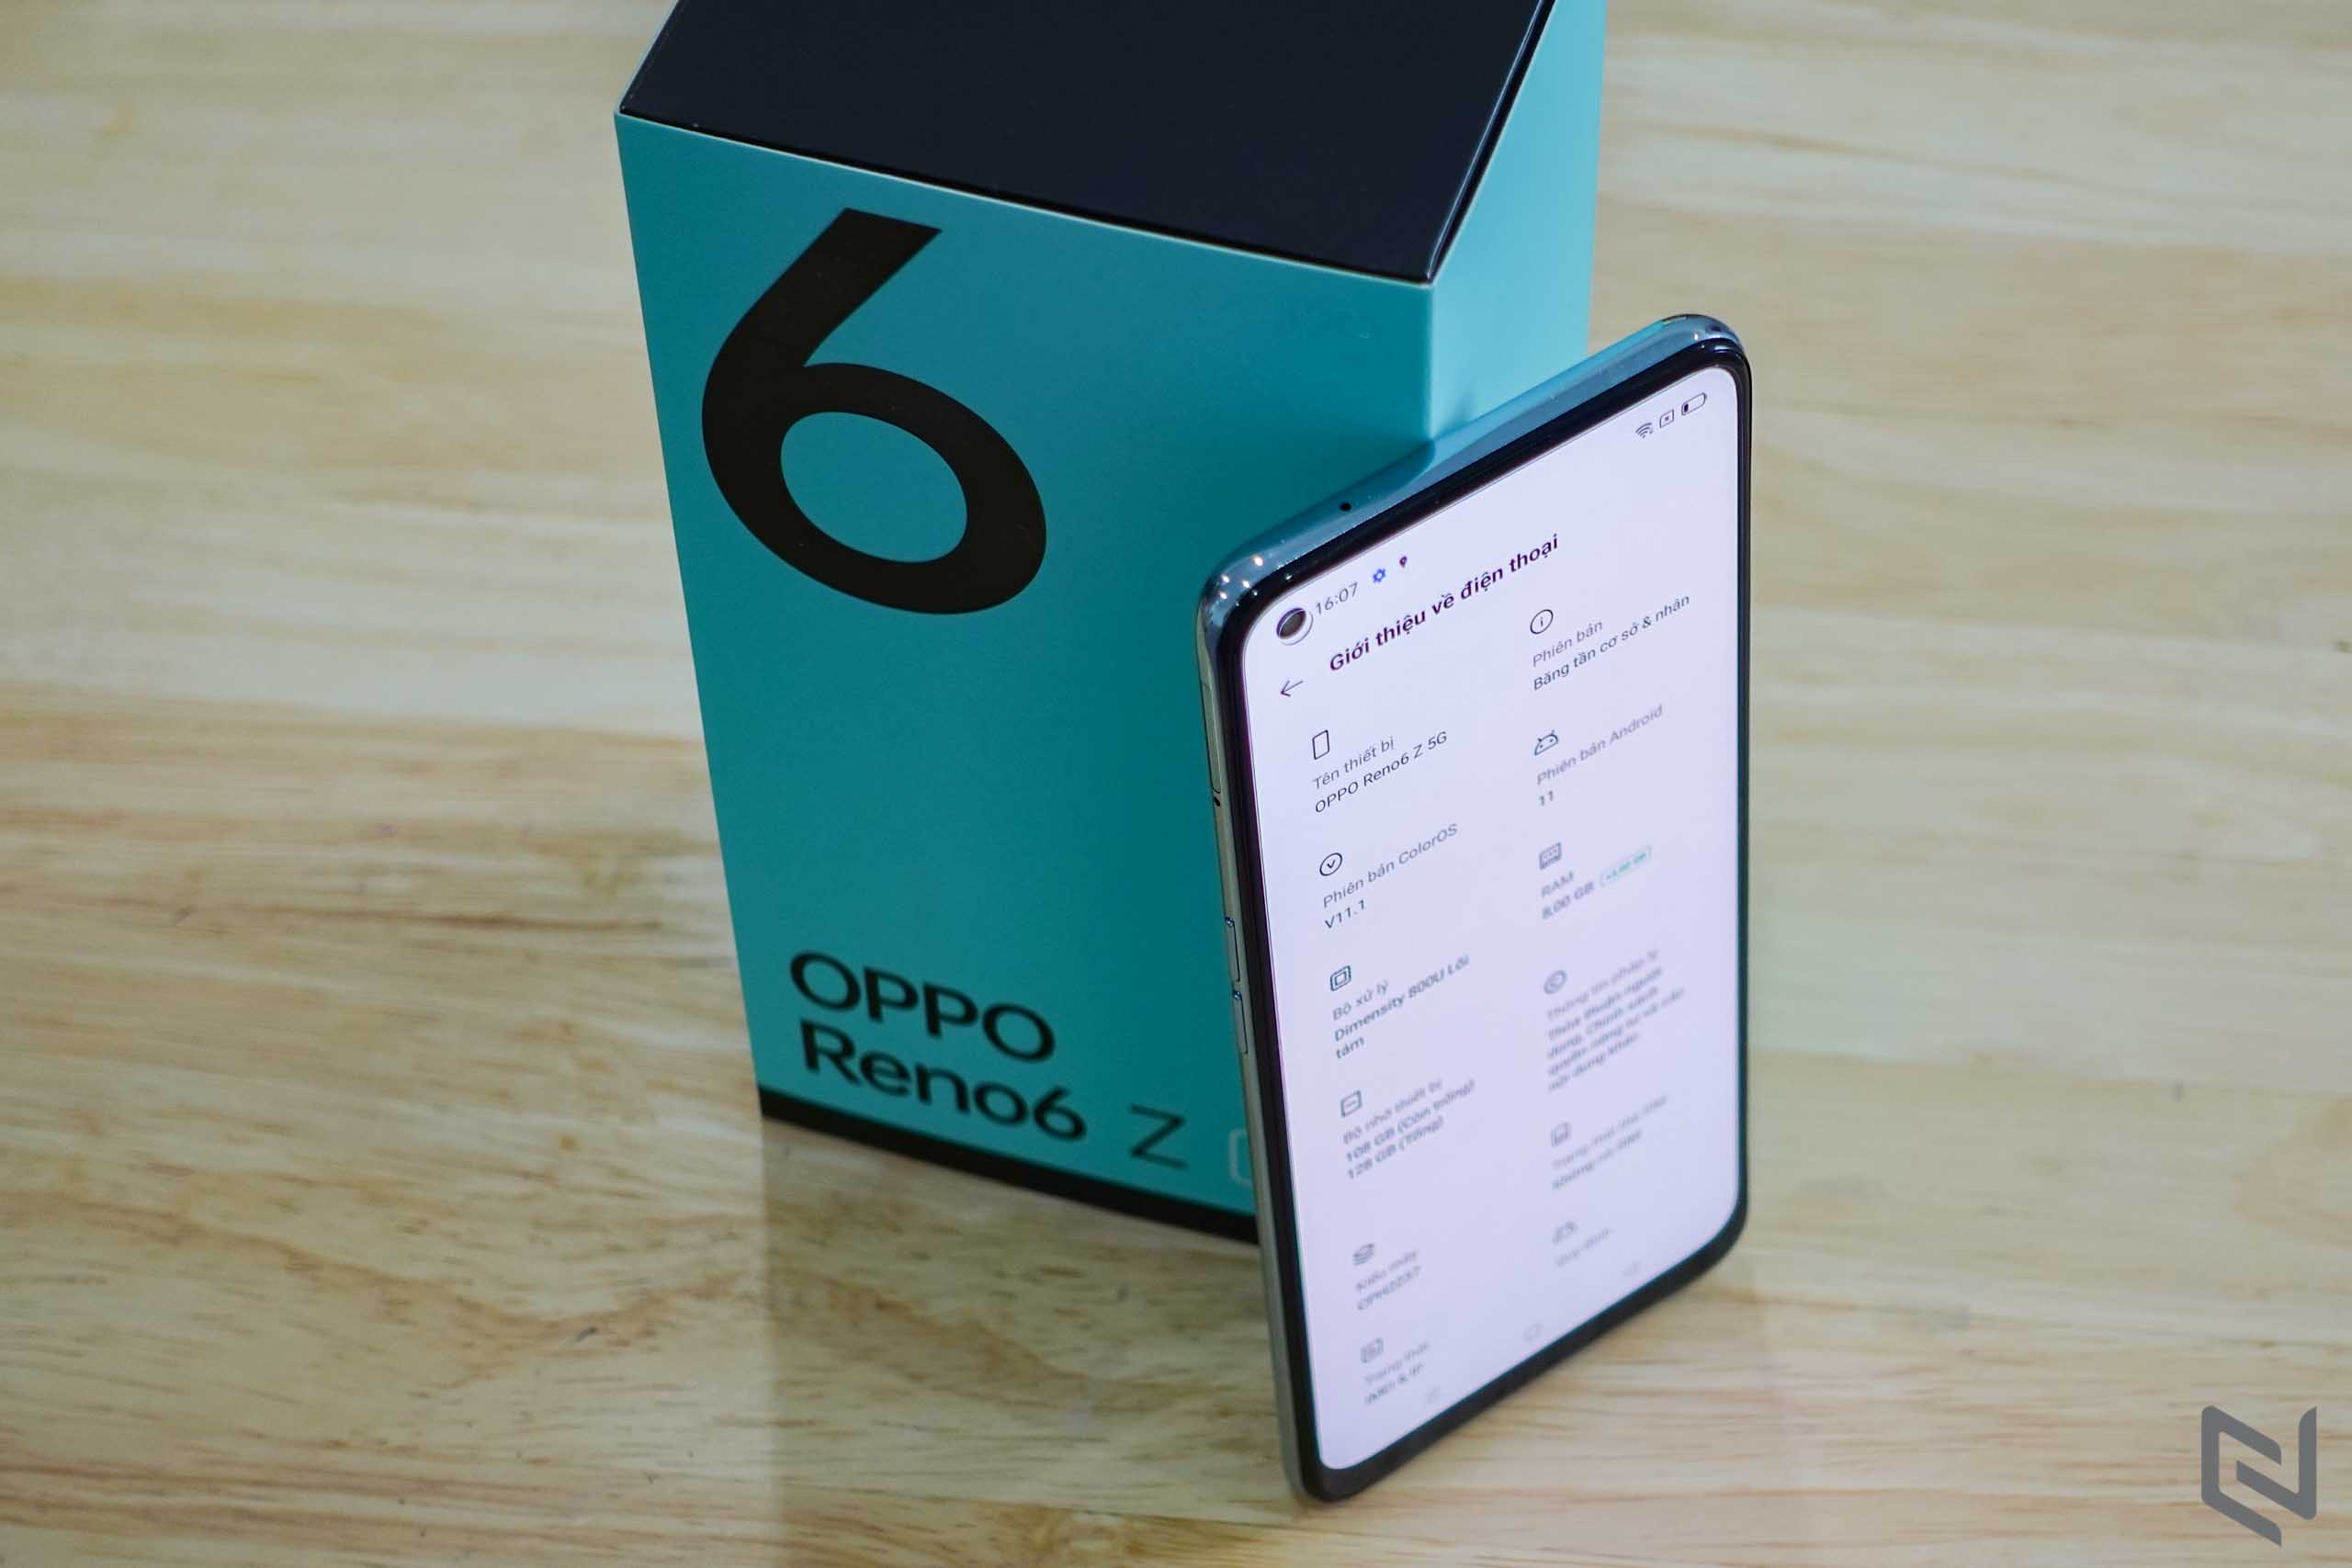 Mở hộp OPPO Reno6 Z 5G: Vẻ ngoài cực kỳ bắt mắt, kết nối 5G và loạt tính năng chụp hình hấp dẫn